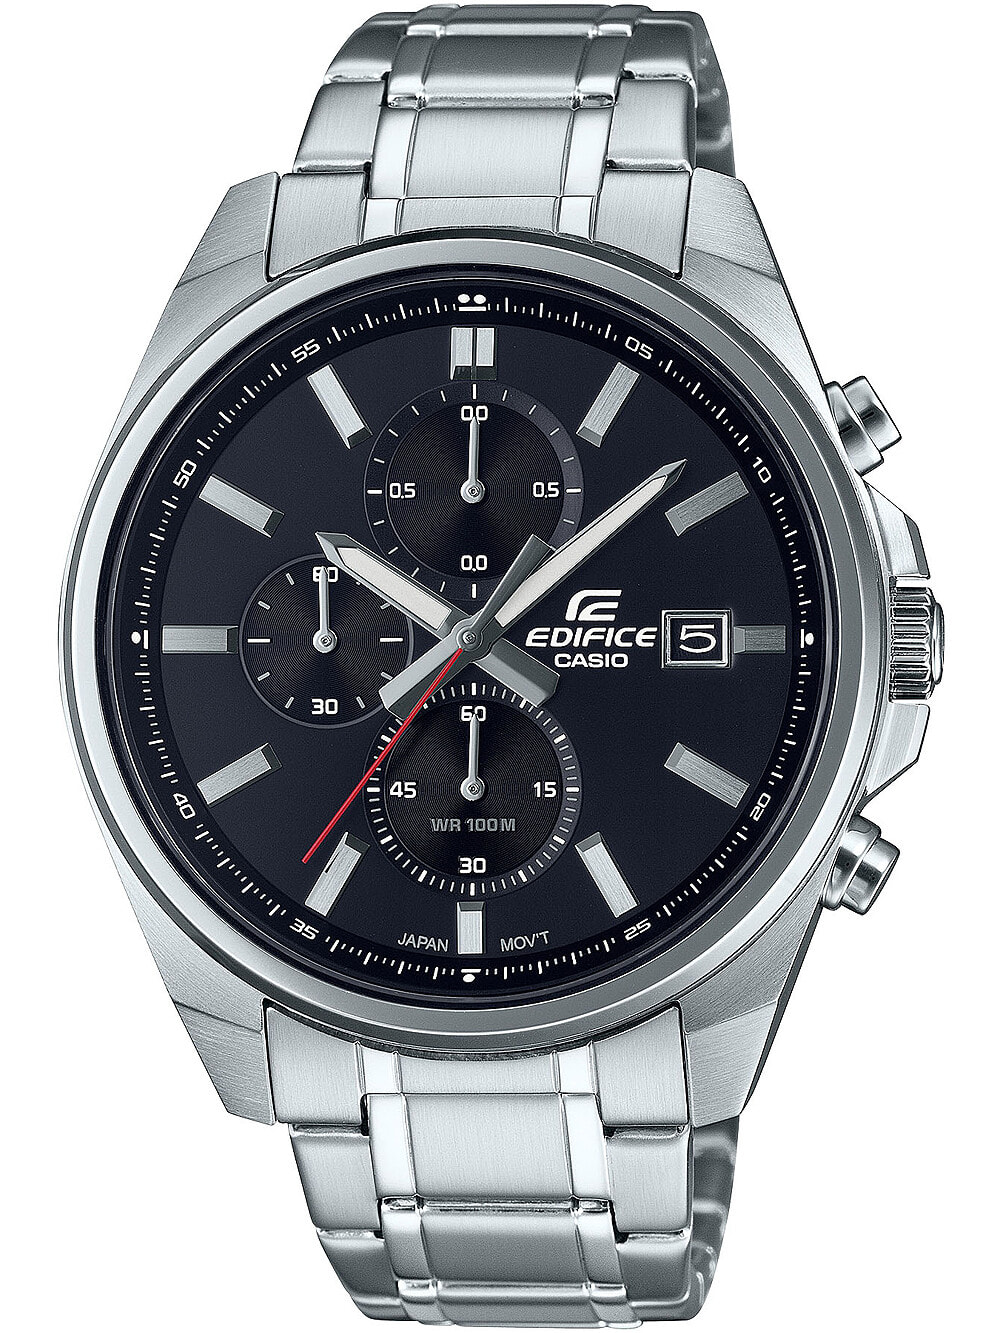 Мужские наручные часы с серебряным браслетом Casio EFV-610D-1AVUEF Edifice mens 43mm 10ATM